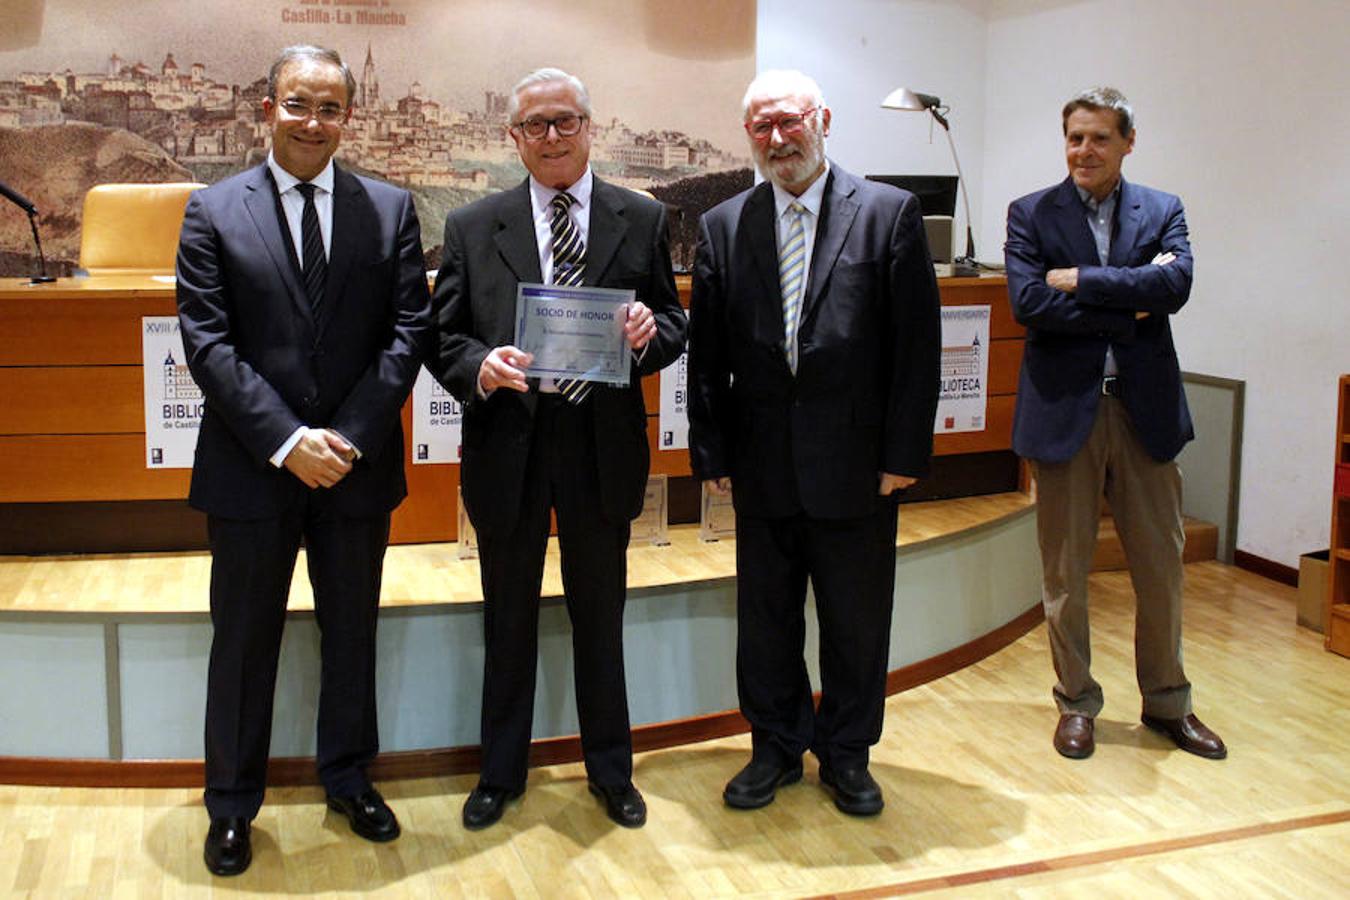 Ricardo Sánchez Candelas, con su placa como socio de honor de la Biblioteca de Castilla-La Mancha